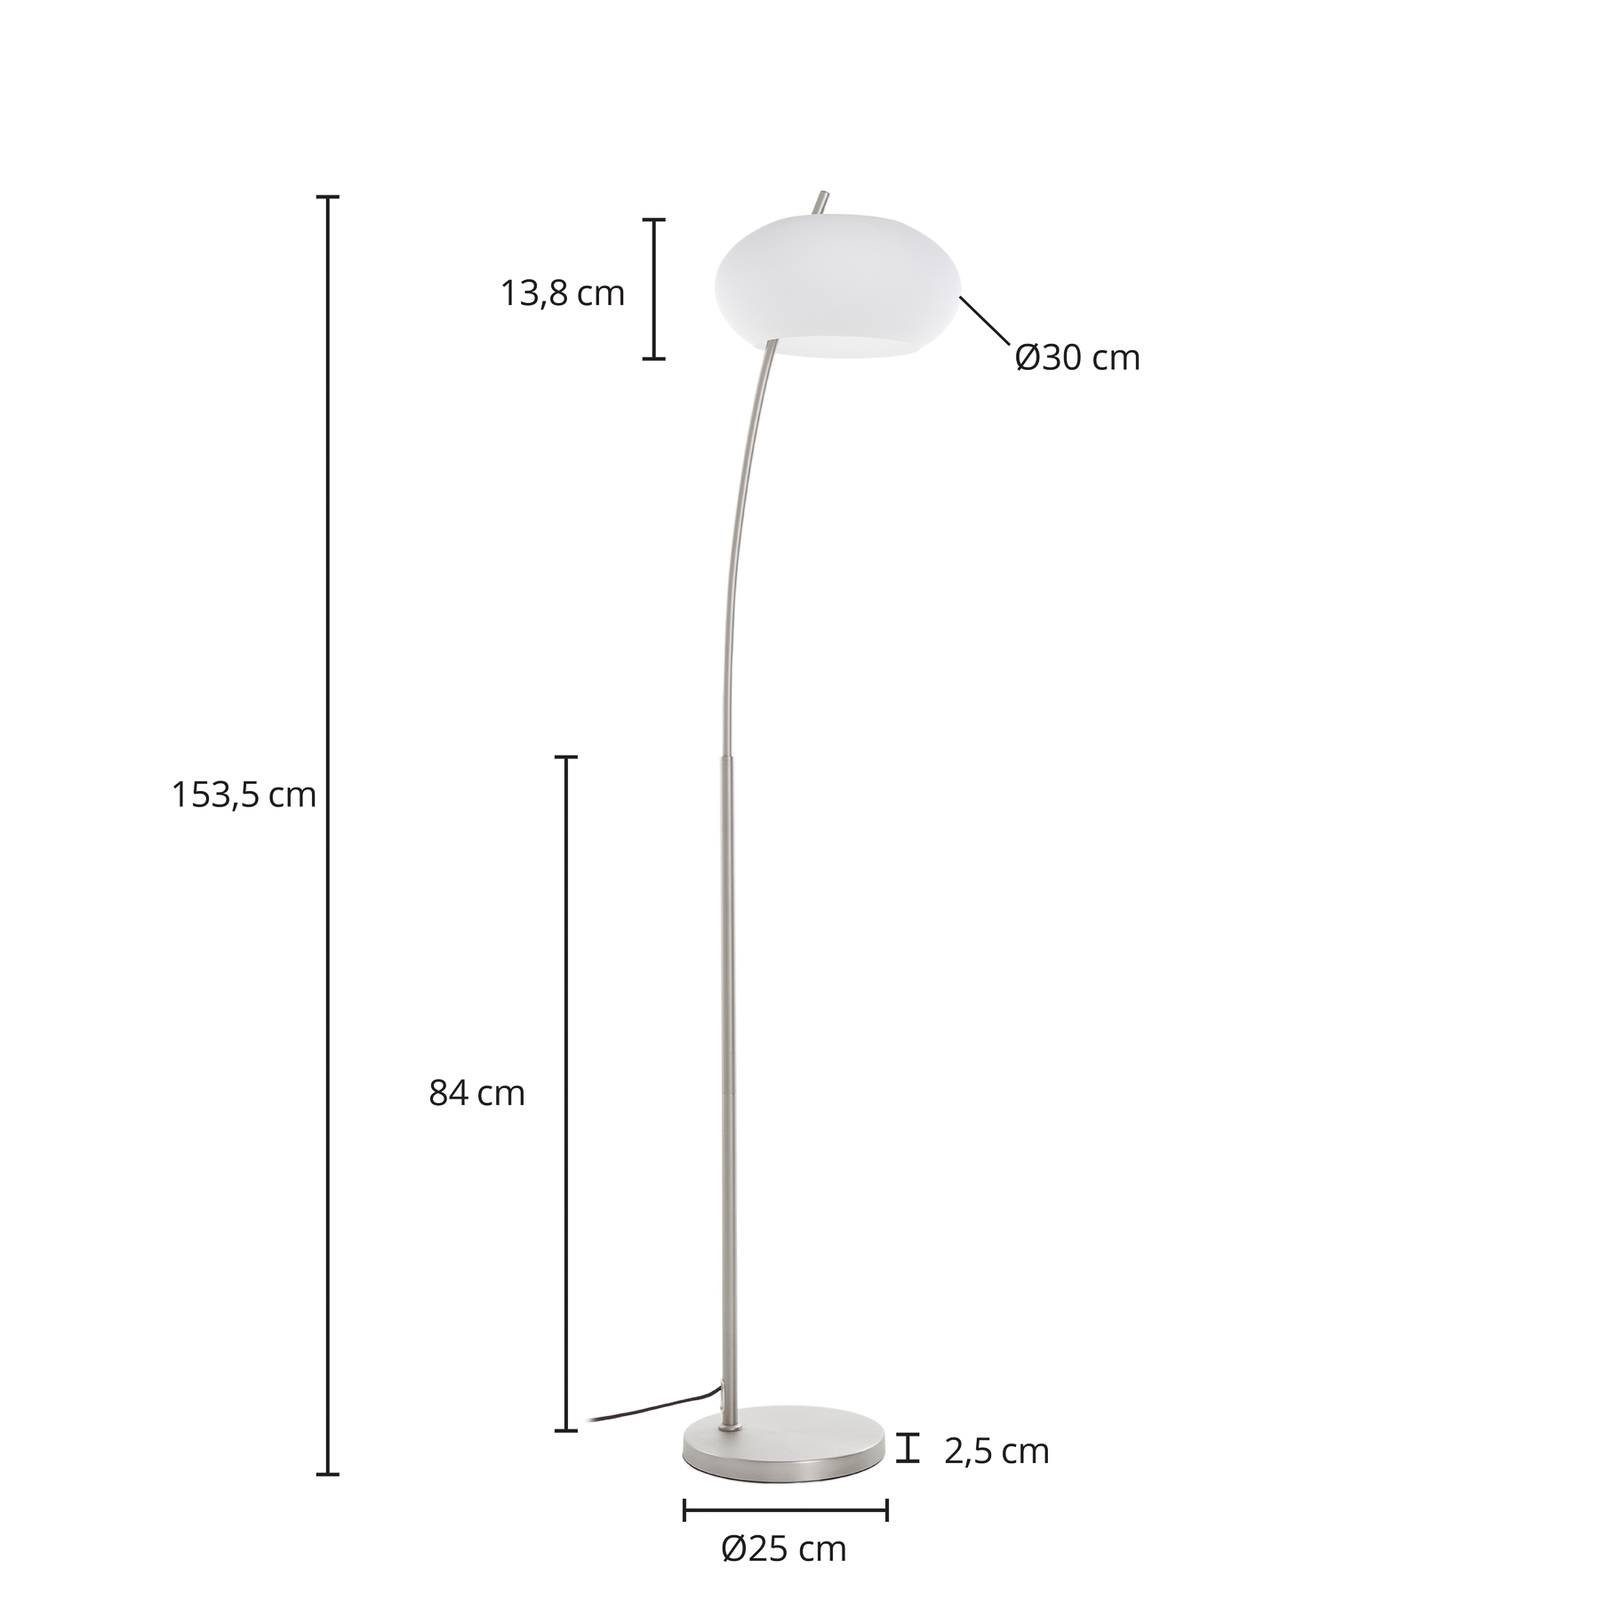 Lucande Stehlampe Sharvil, Leuchtmittel nicht inklusive, Design, Eisen, Glas, nickel matt, weiß, 1 flammig, E27, Design | Standleuchten